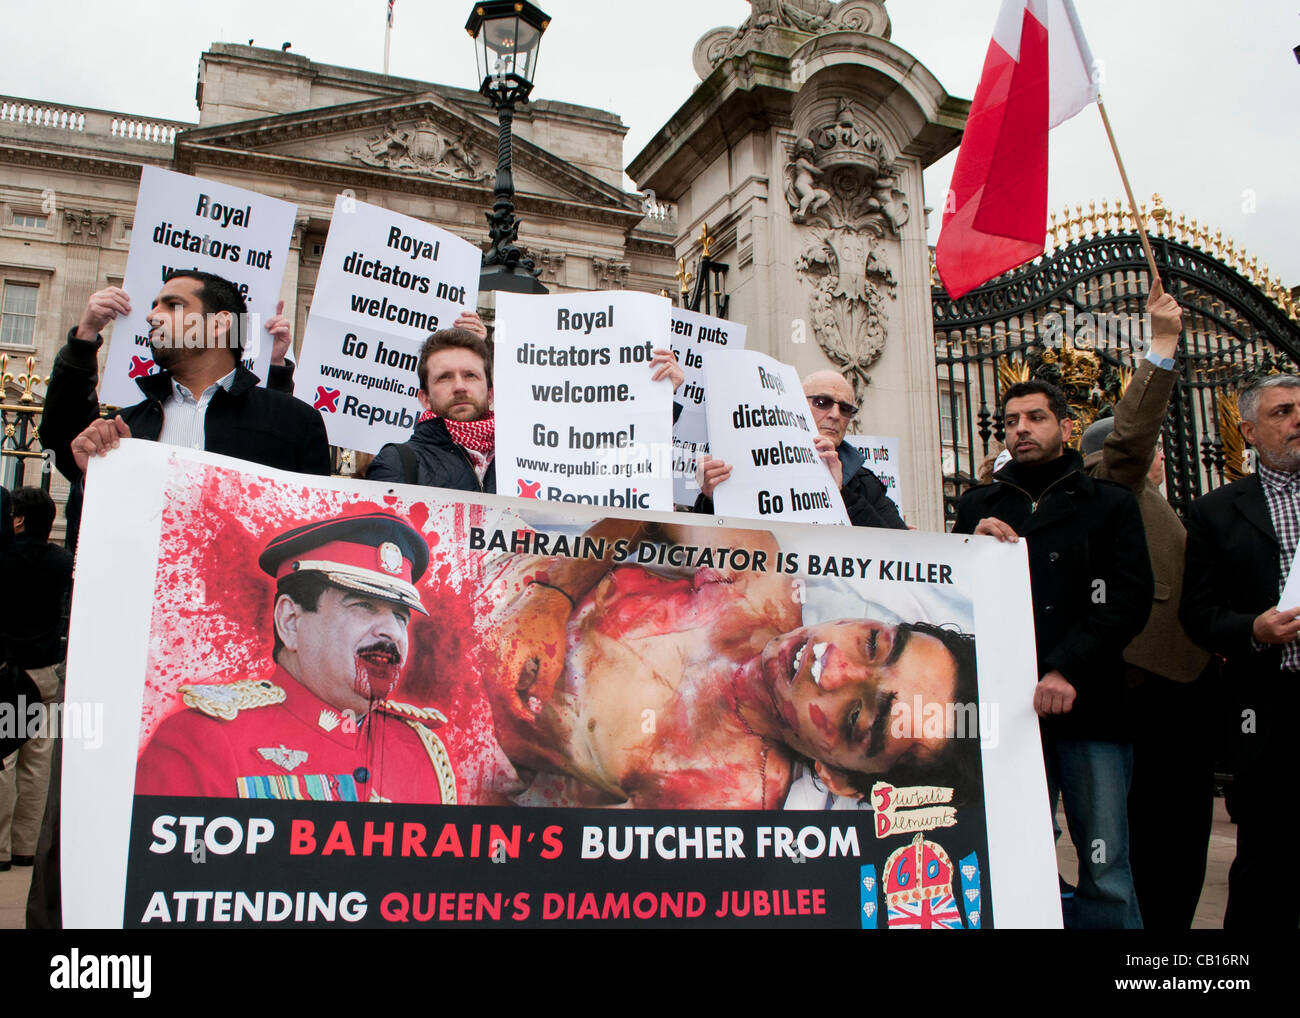 Londra, Regno Unito. 18/05/12. Occupare di Londra e anonimo protestare contro la regina per la decisione di invitare i vari capi di stato di paesi come il Bahrain, dove essi rivendicazione, abusi dei diritti umani e il soffocamento di crescita democratica sono in corso. Foto Stock